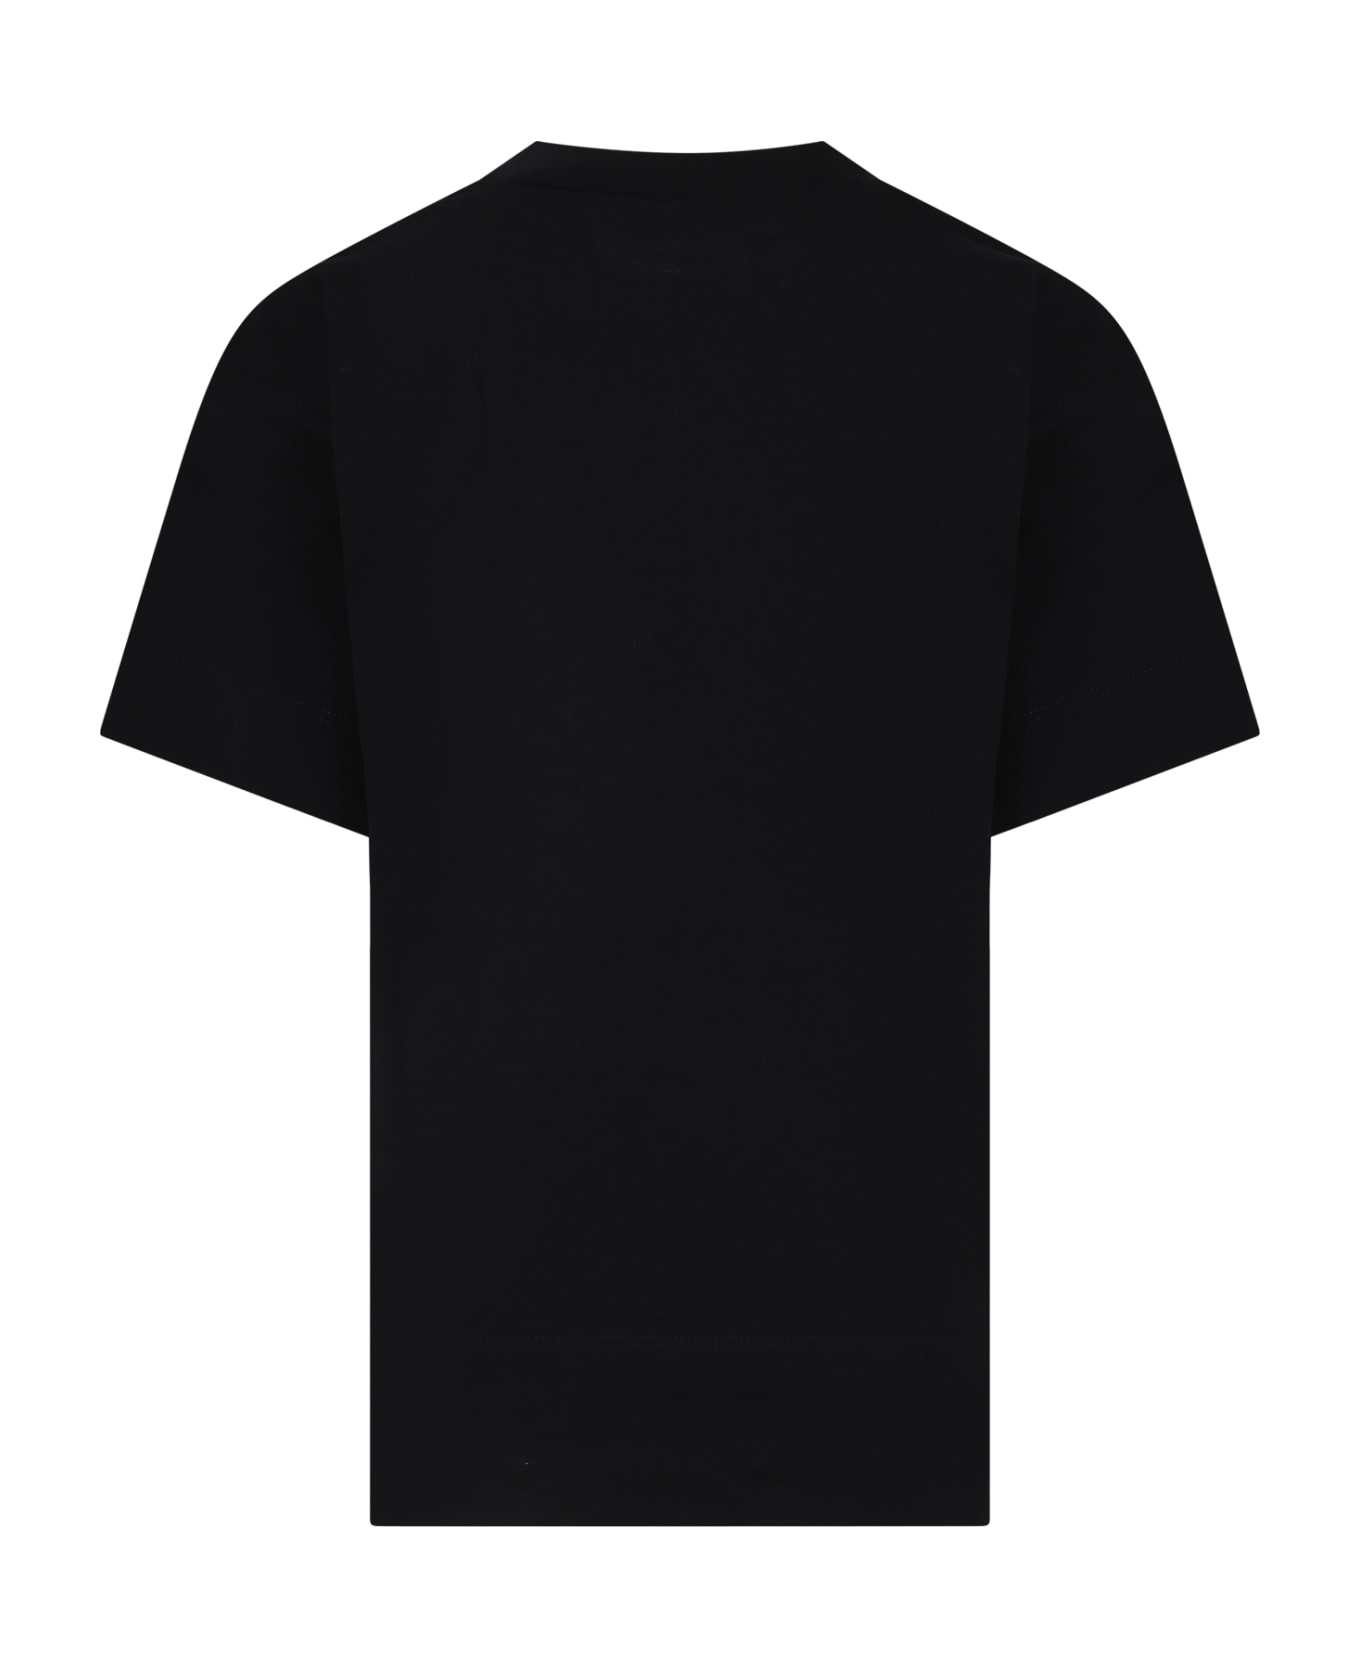 N.21 Black T-shirt For Girl - Black